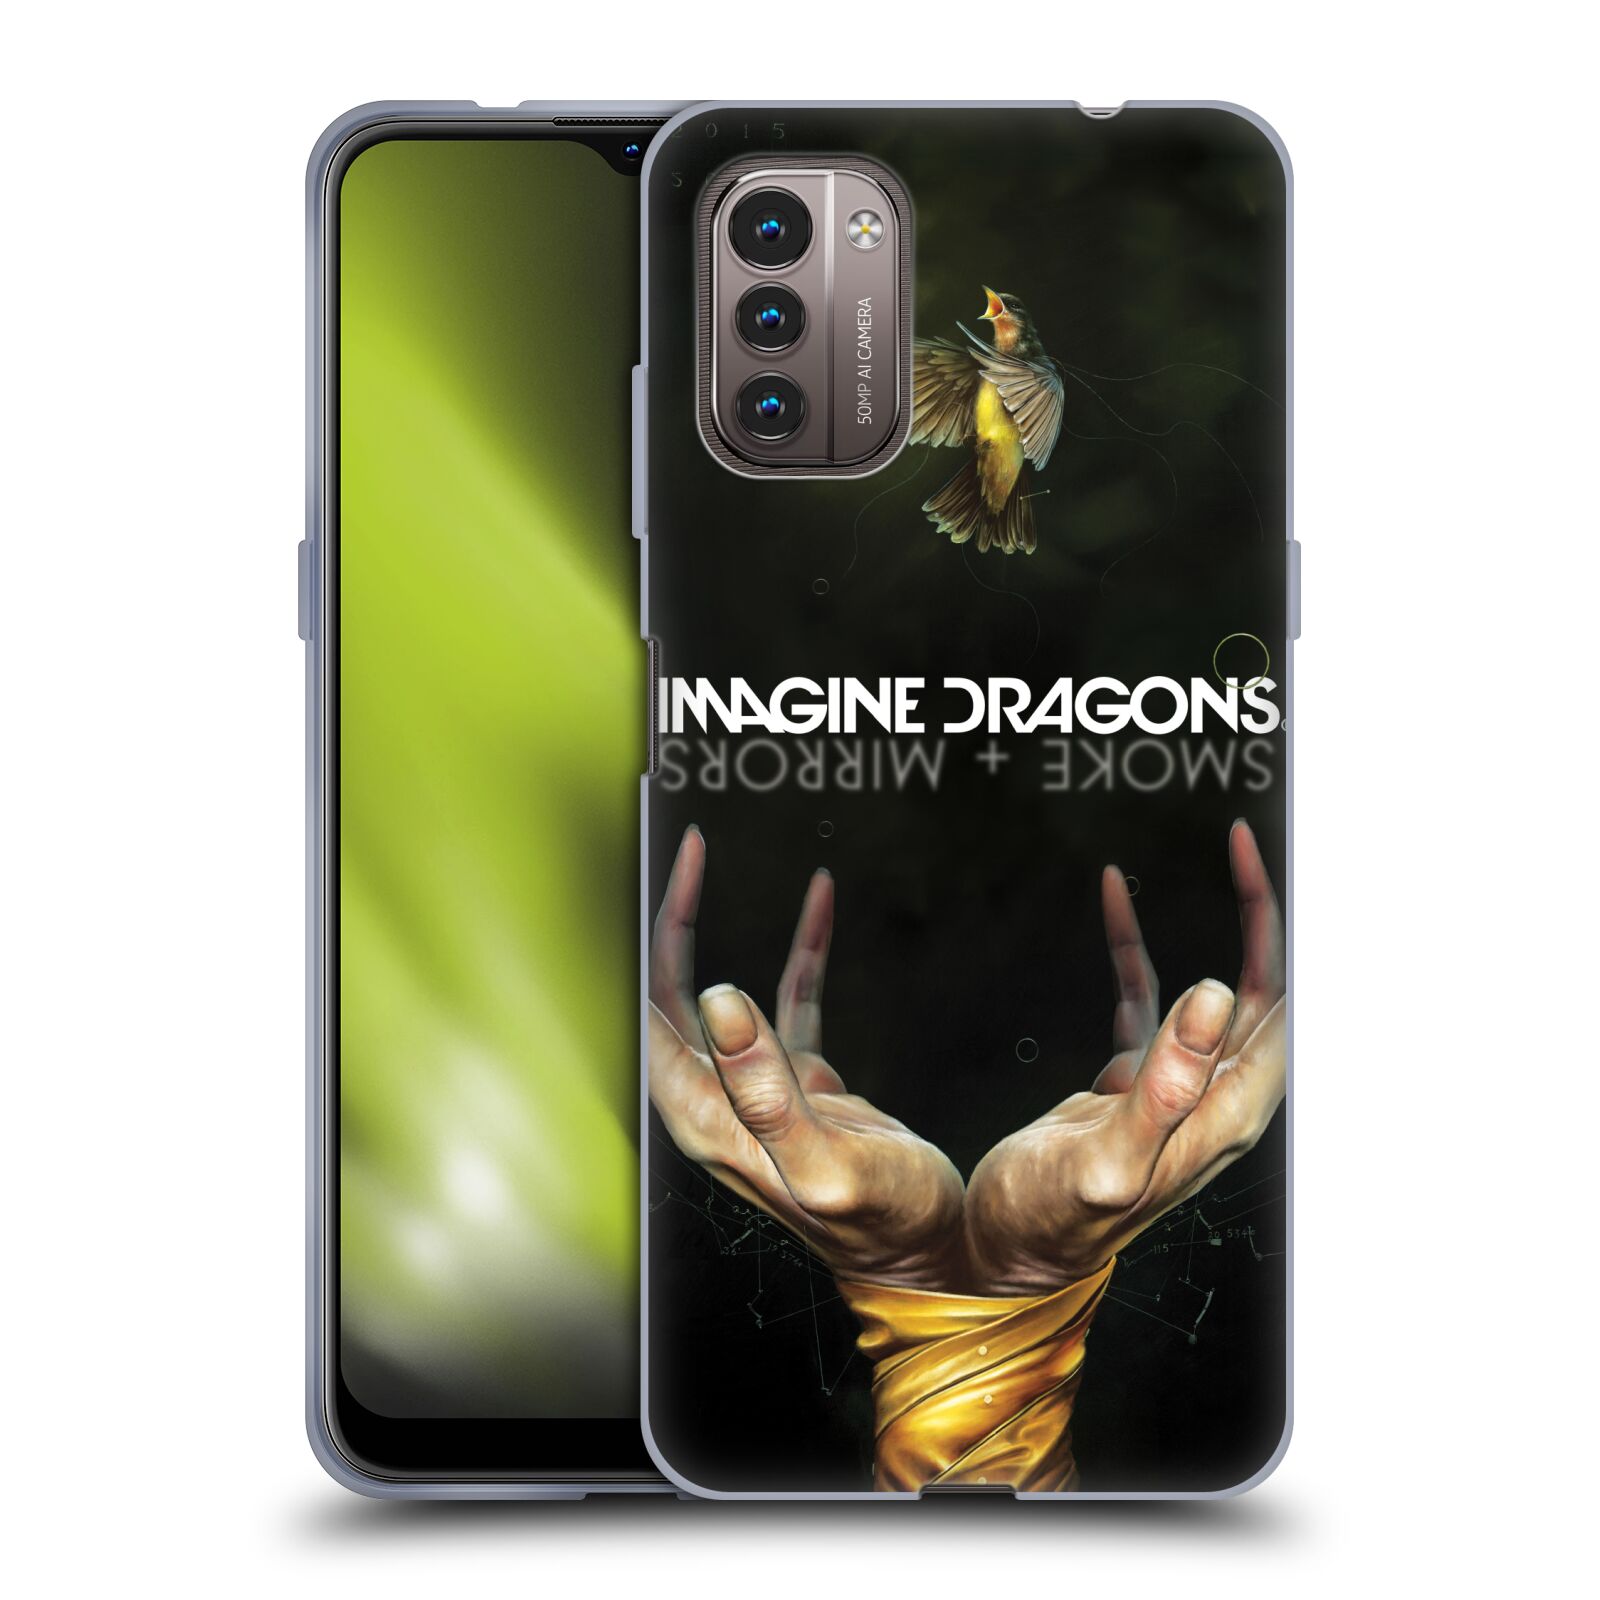 Silikonové pouzdro na mobil Nokia G11 / G21 - Imagine Dragons - Smoke And Mirrors